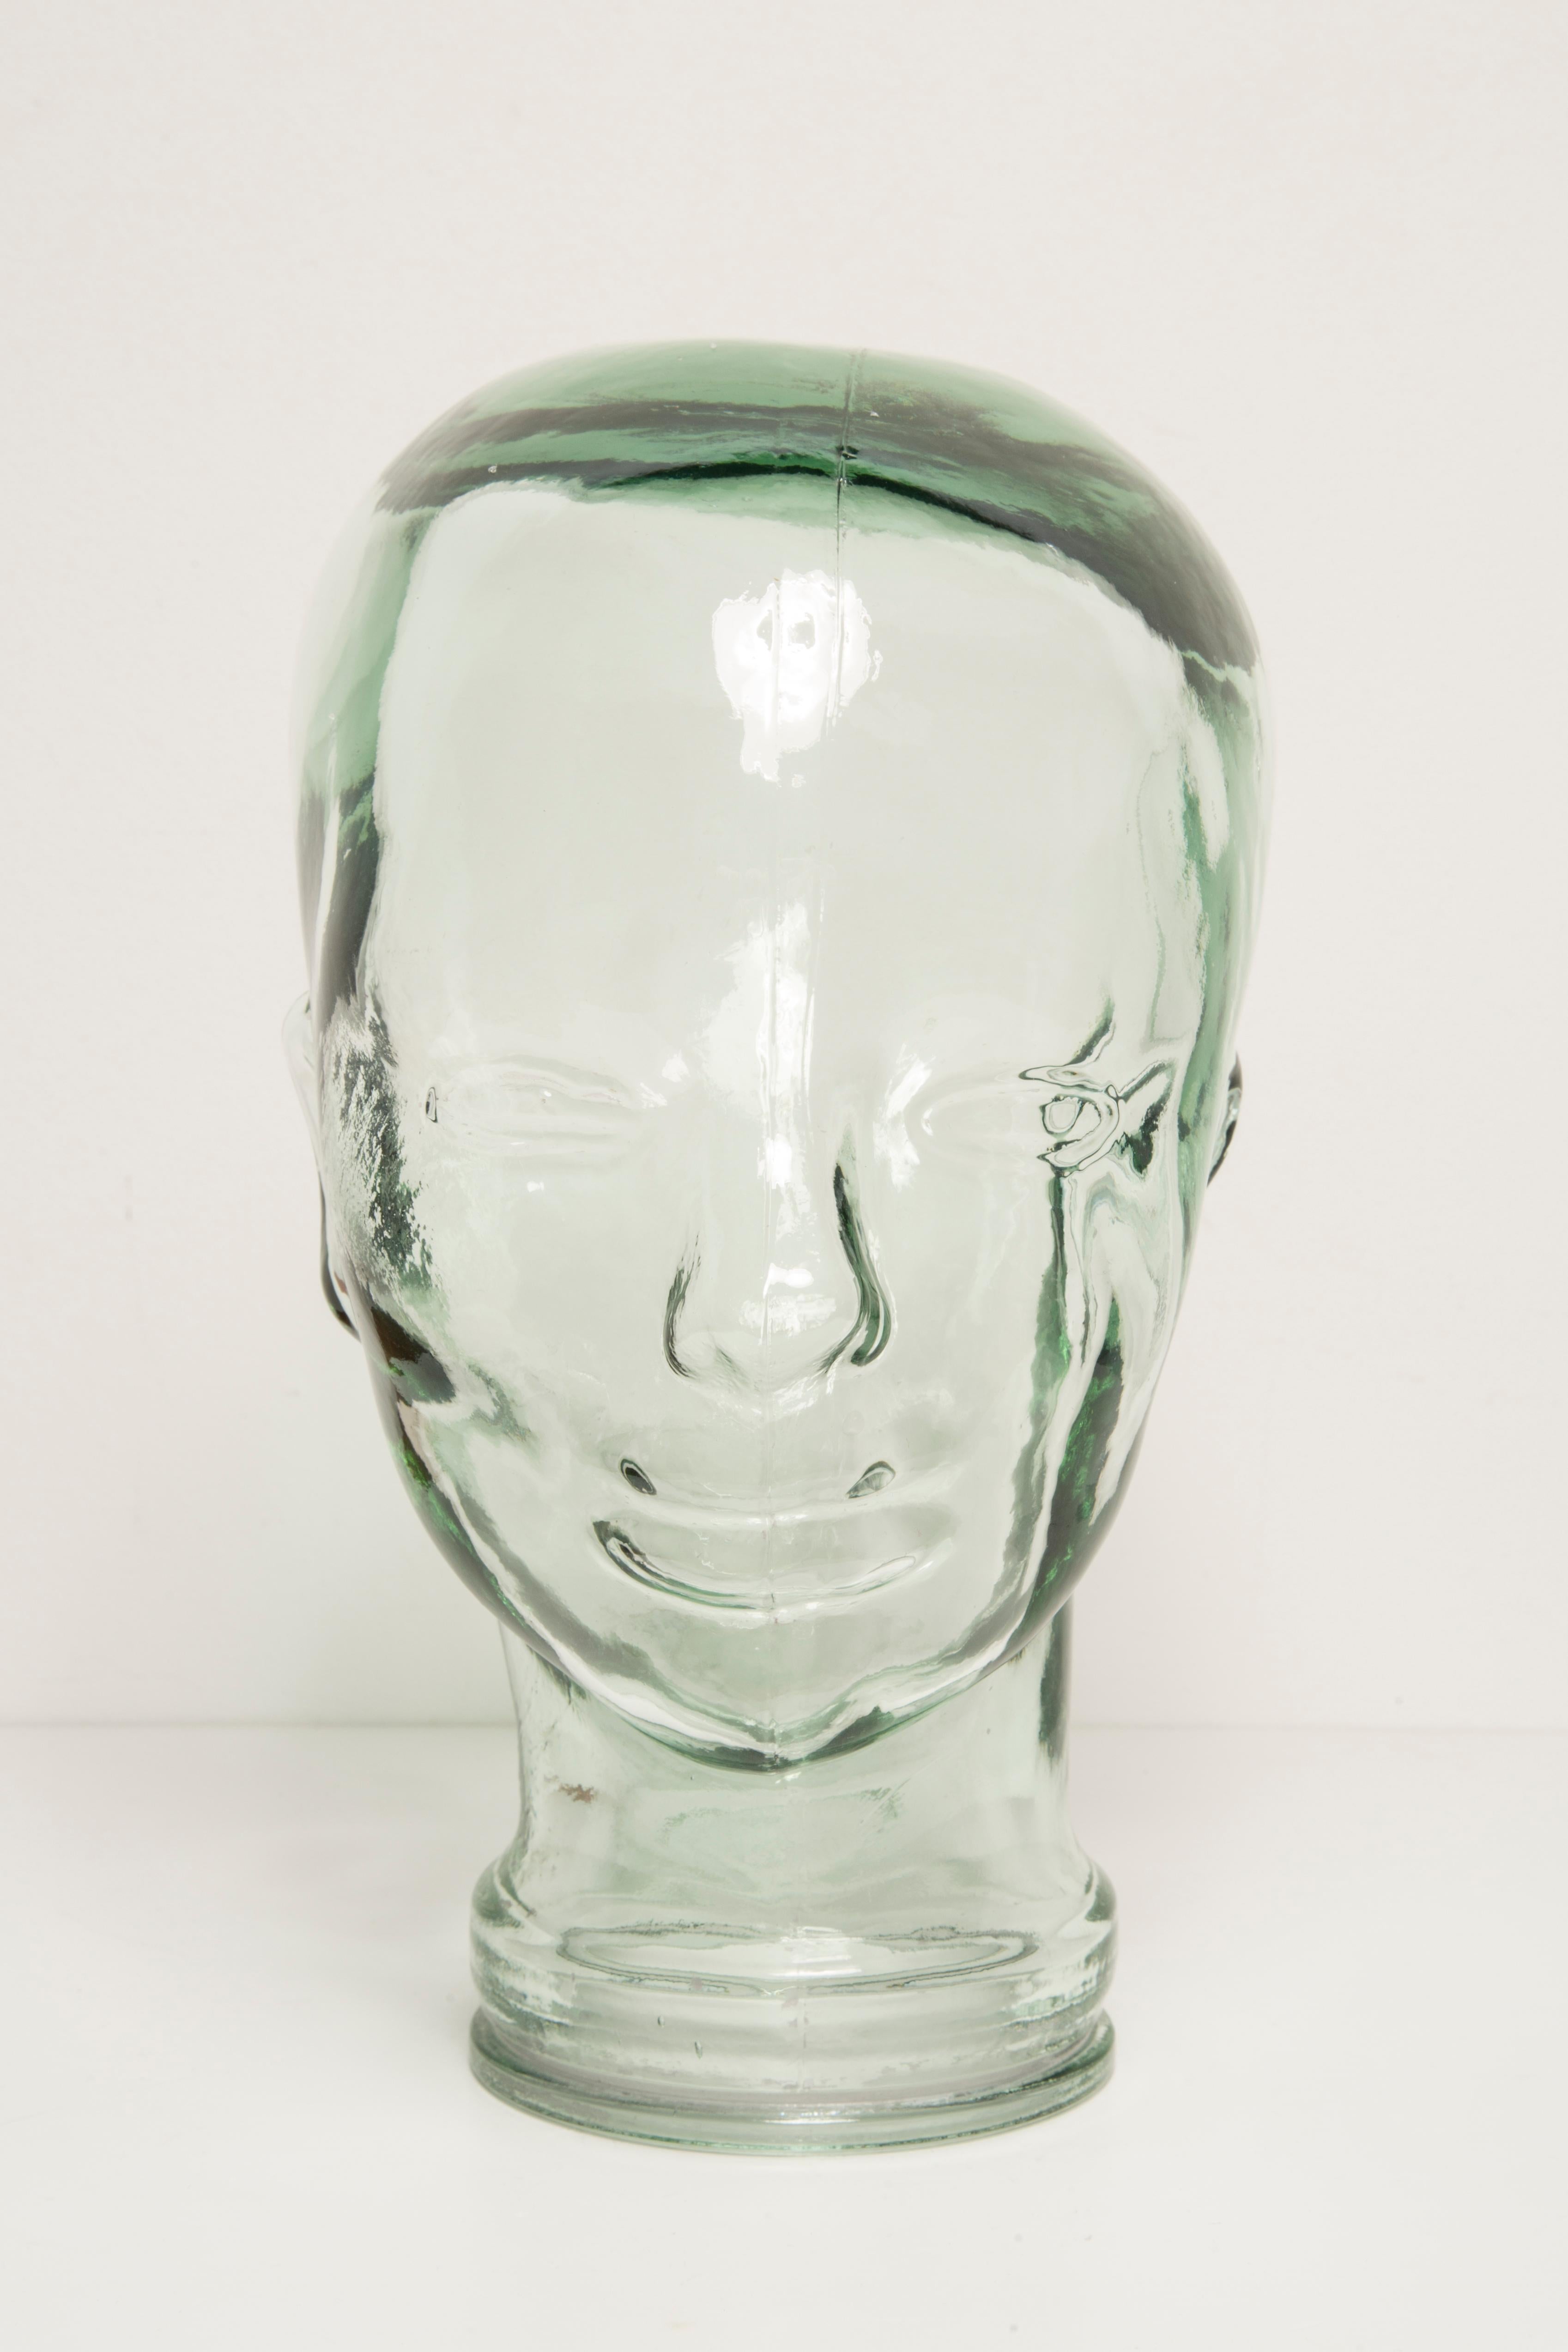 Lebensgroßer Glaskopf in einer einzigartigen transparenten Farbe. Produziert in einem deutschen Stahlwerk in den 1970er Jahren. Perfekter Zustand. Eine perfekte Ergänzung für die Inneneinrichtung, als Fotostütze, Display oder Kopfhörerständer.